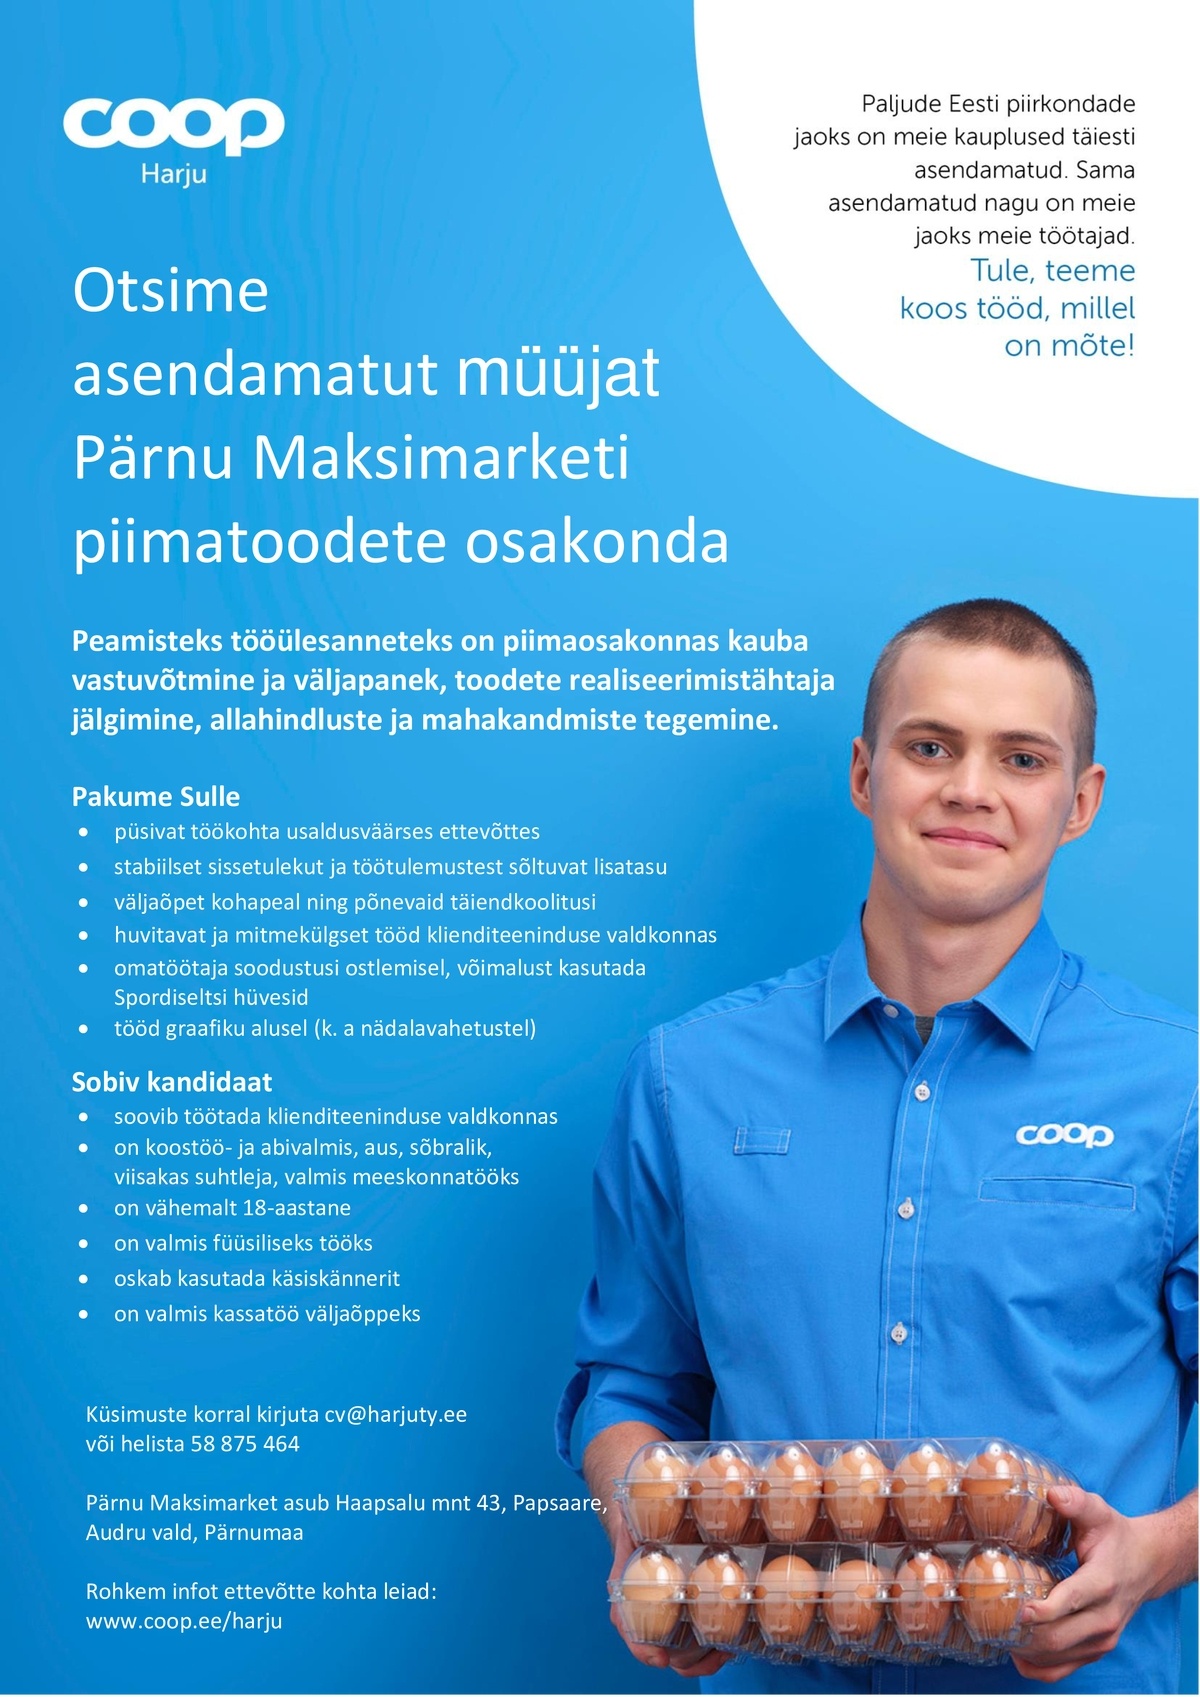 CVKeskus.ee klient Müüja Pärnu Maksimarketisse (Coop Harju)